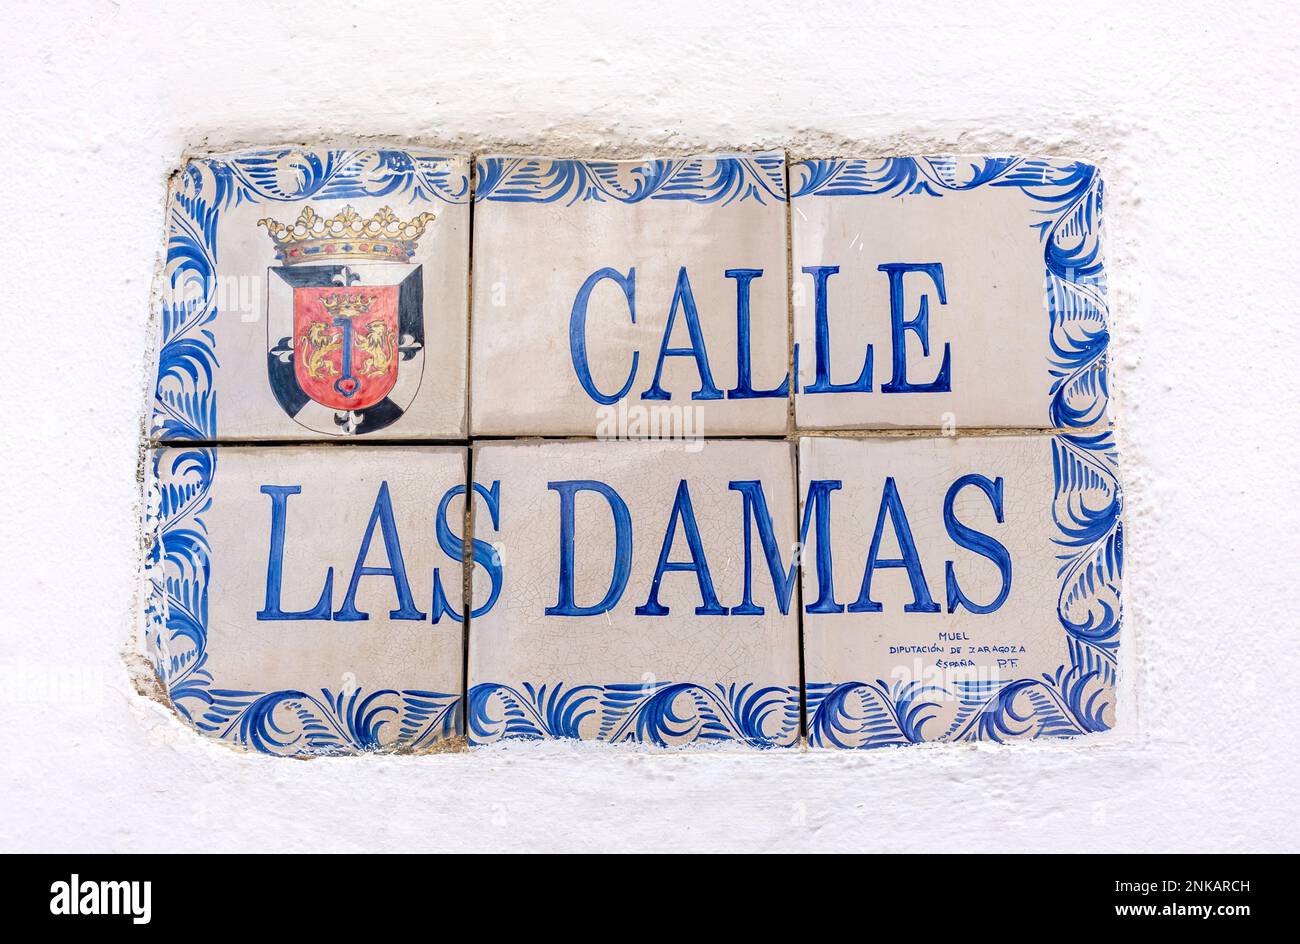 Calle Las Damas rue céramique dans la vieille ville, Saint-Domingue, République dominicaine (Republica Dominicana), grandes Antilles, Caraïbes Banque D'Images